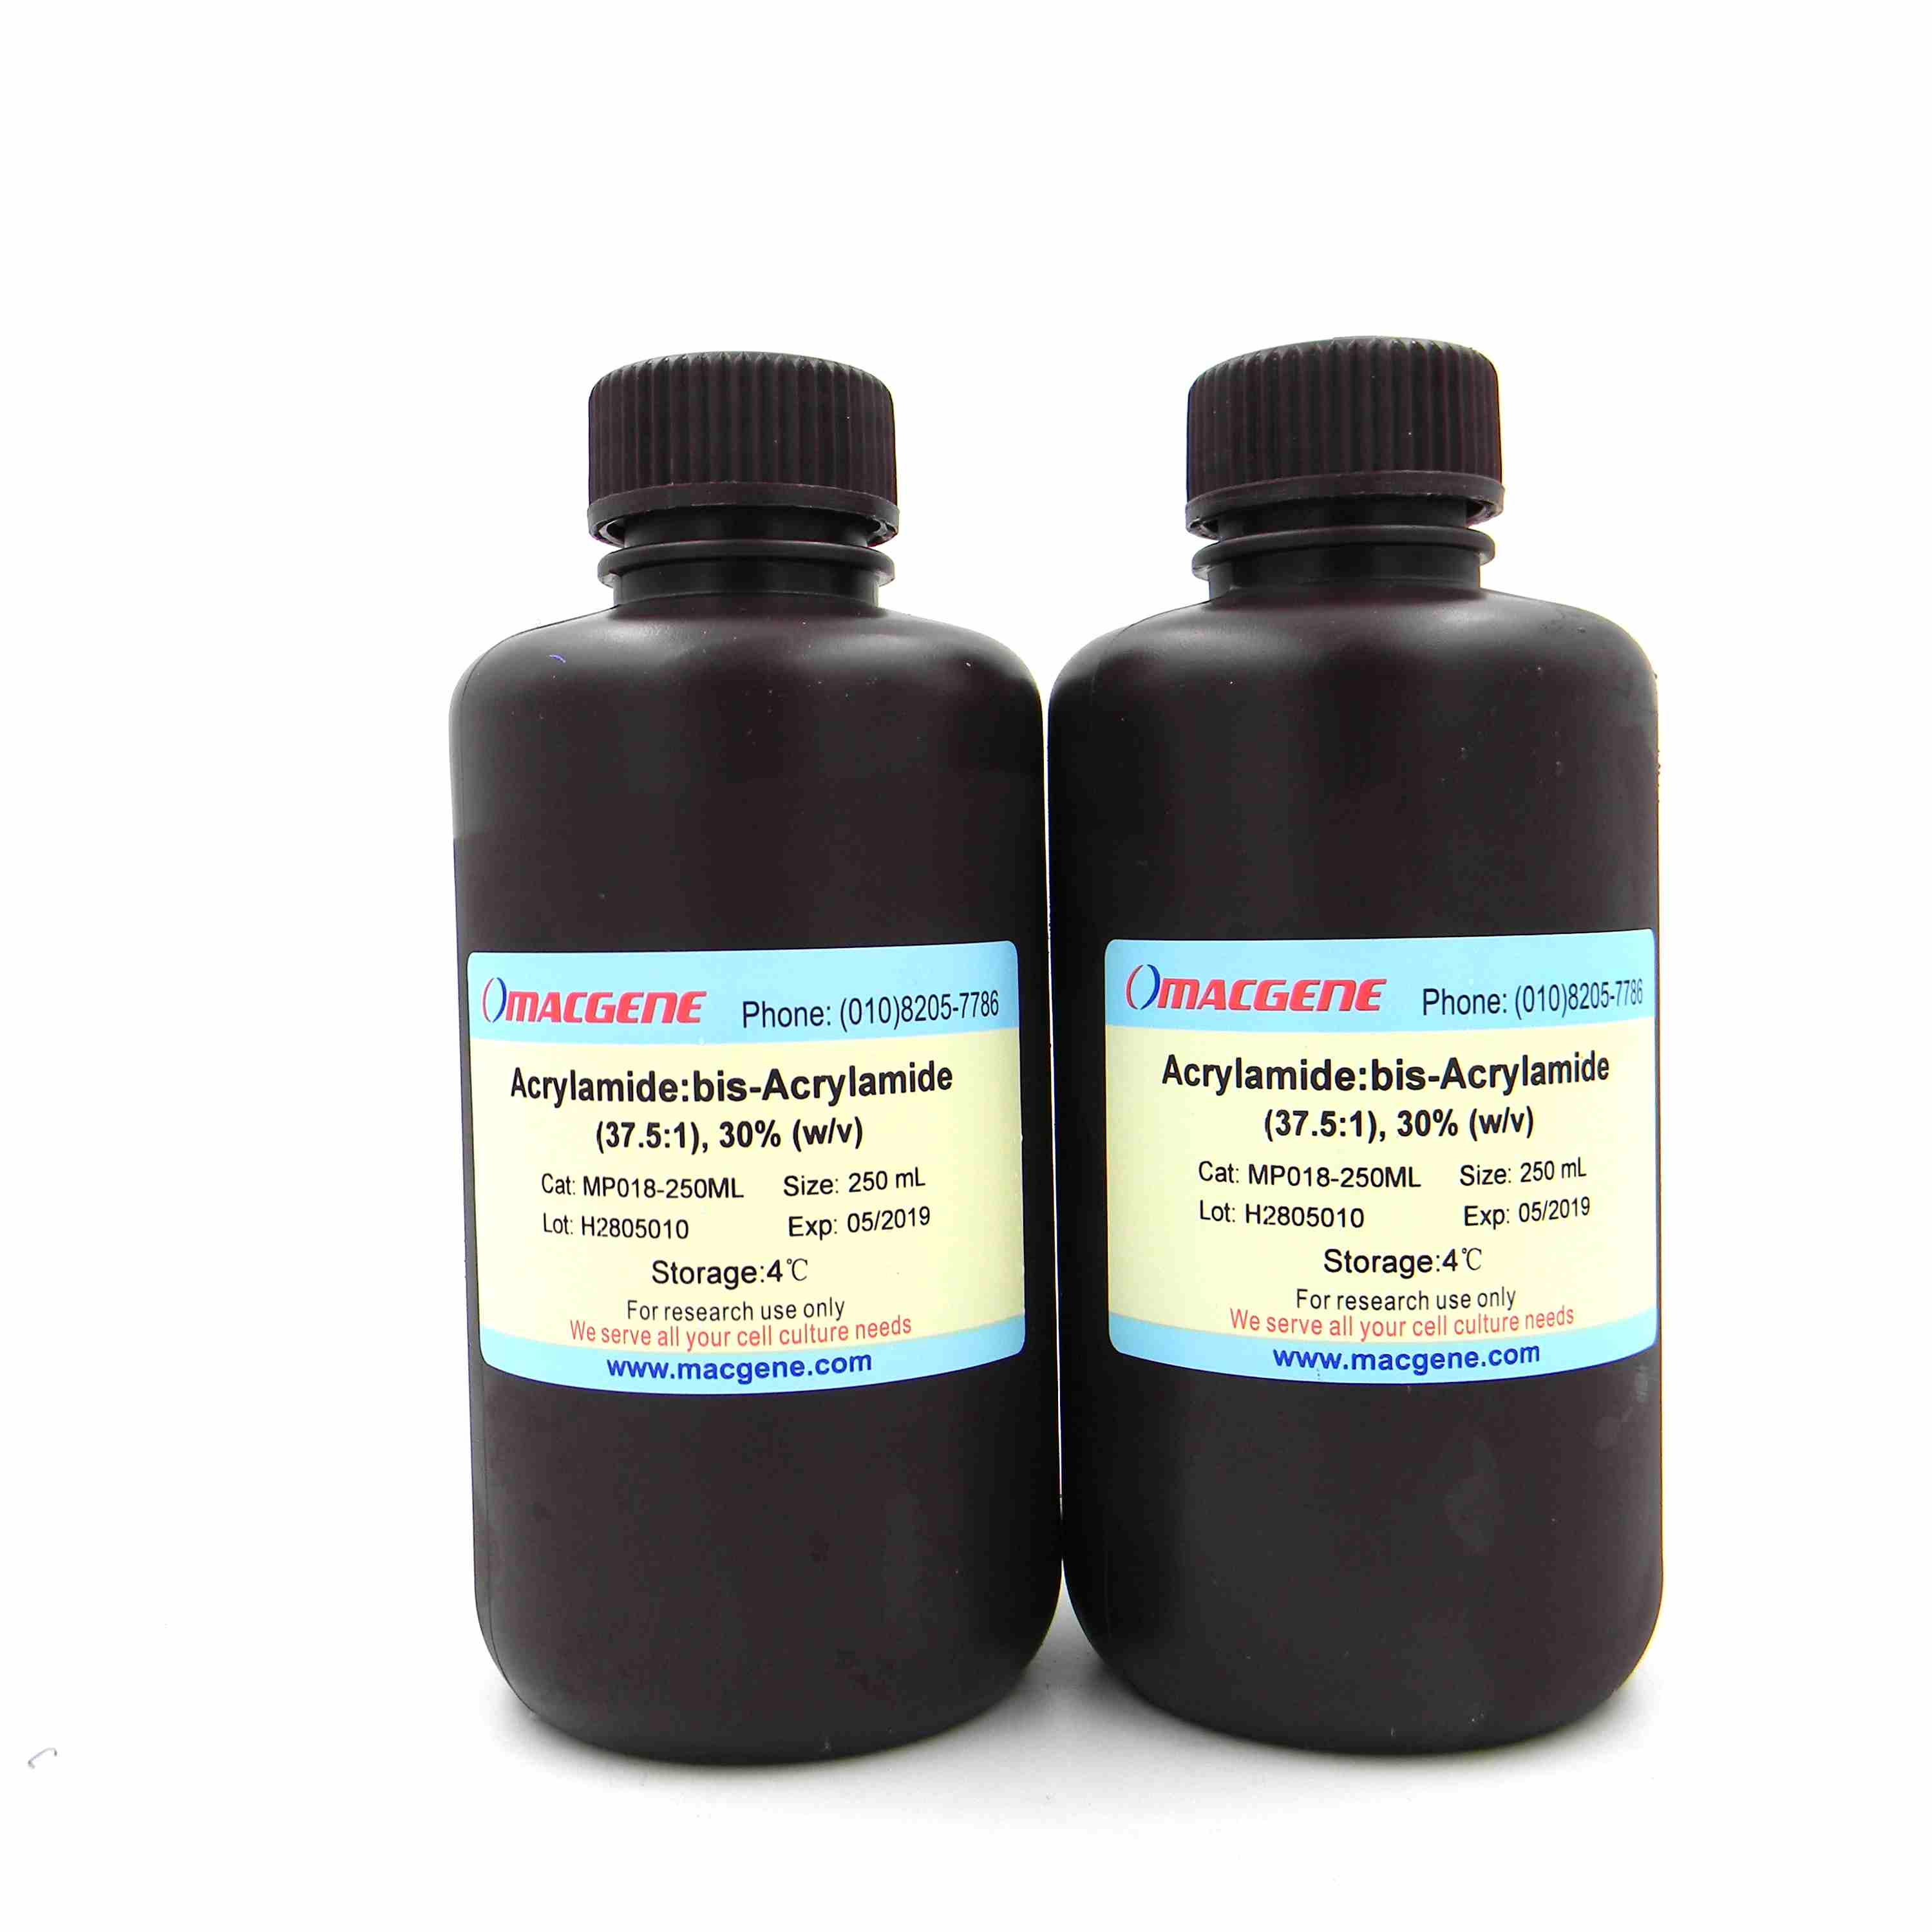 Acrylamide:bis-Acrylamide (37.5:1), 30%